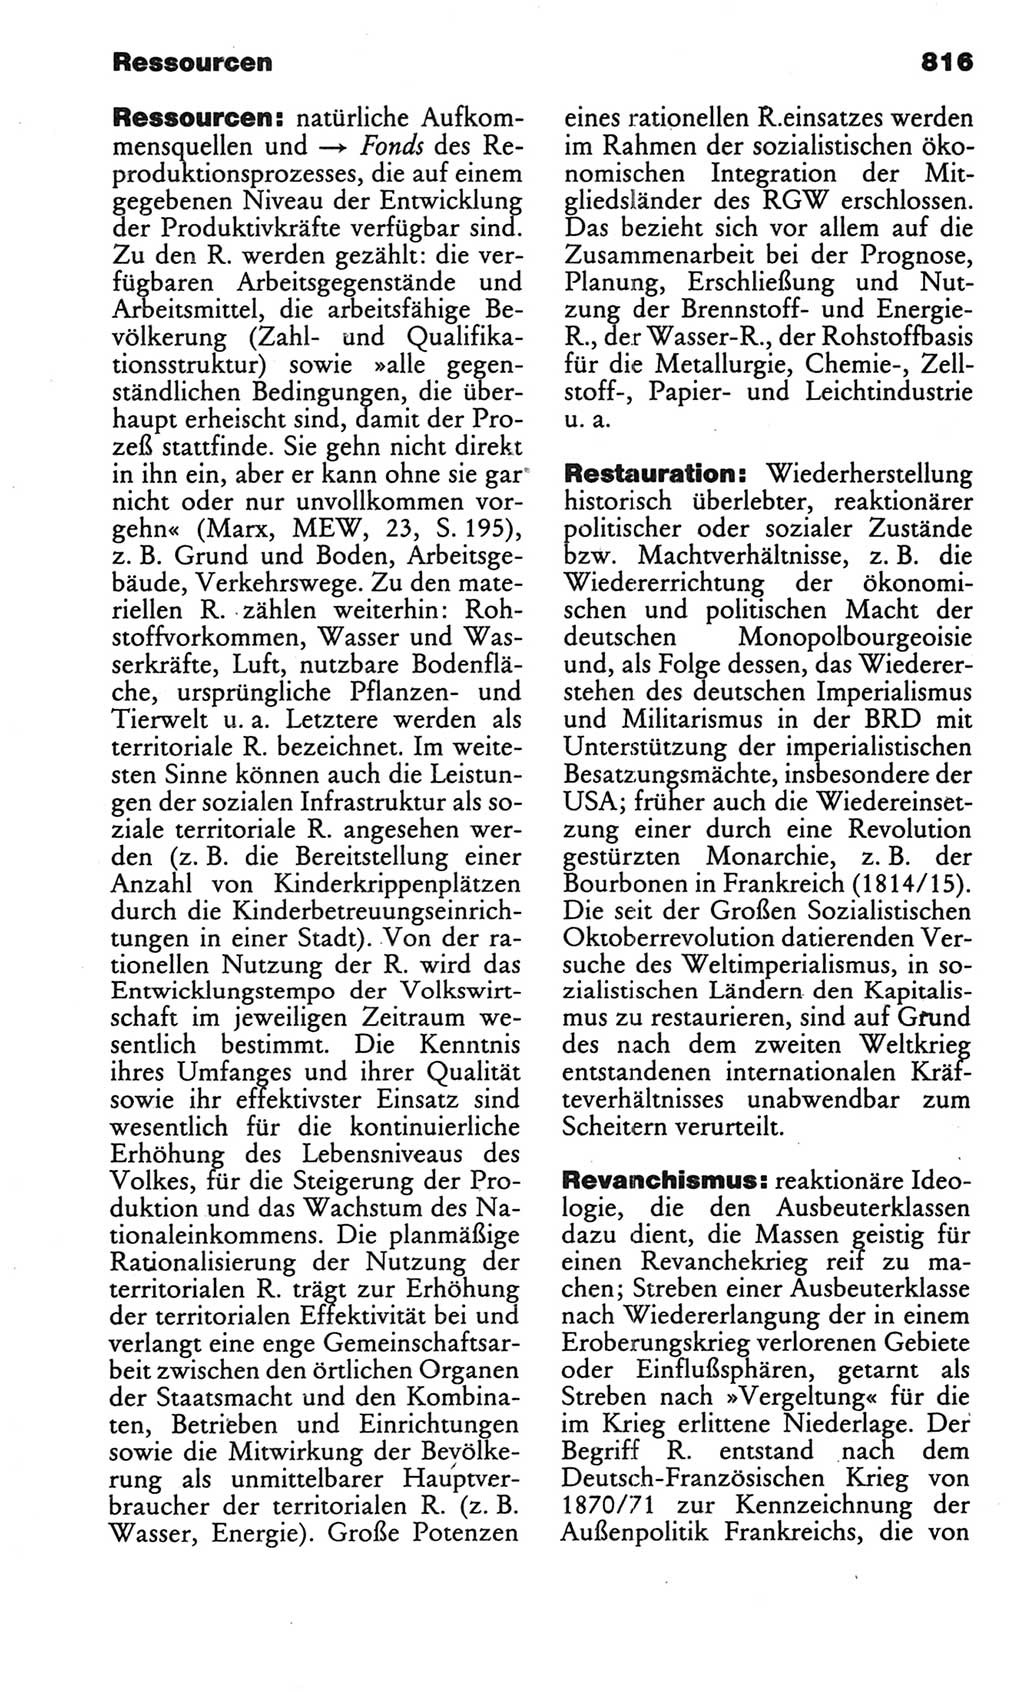 Kleines politisches Wörterbuch [Deutsche Demokratische Republik (DDR)] 1986, Seite 816 (Kl. pol. Wb. DDR 1986, S. 816)